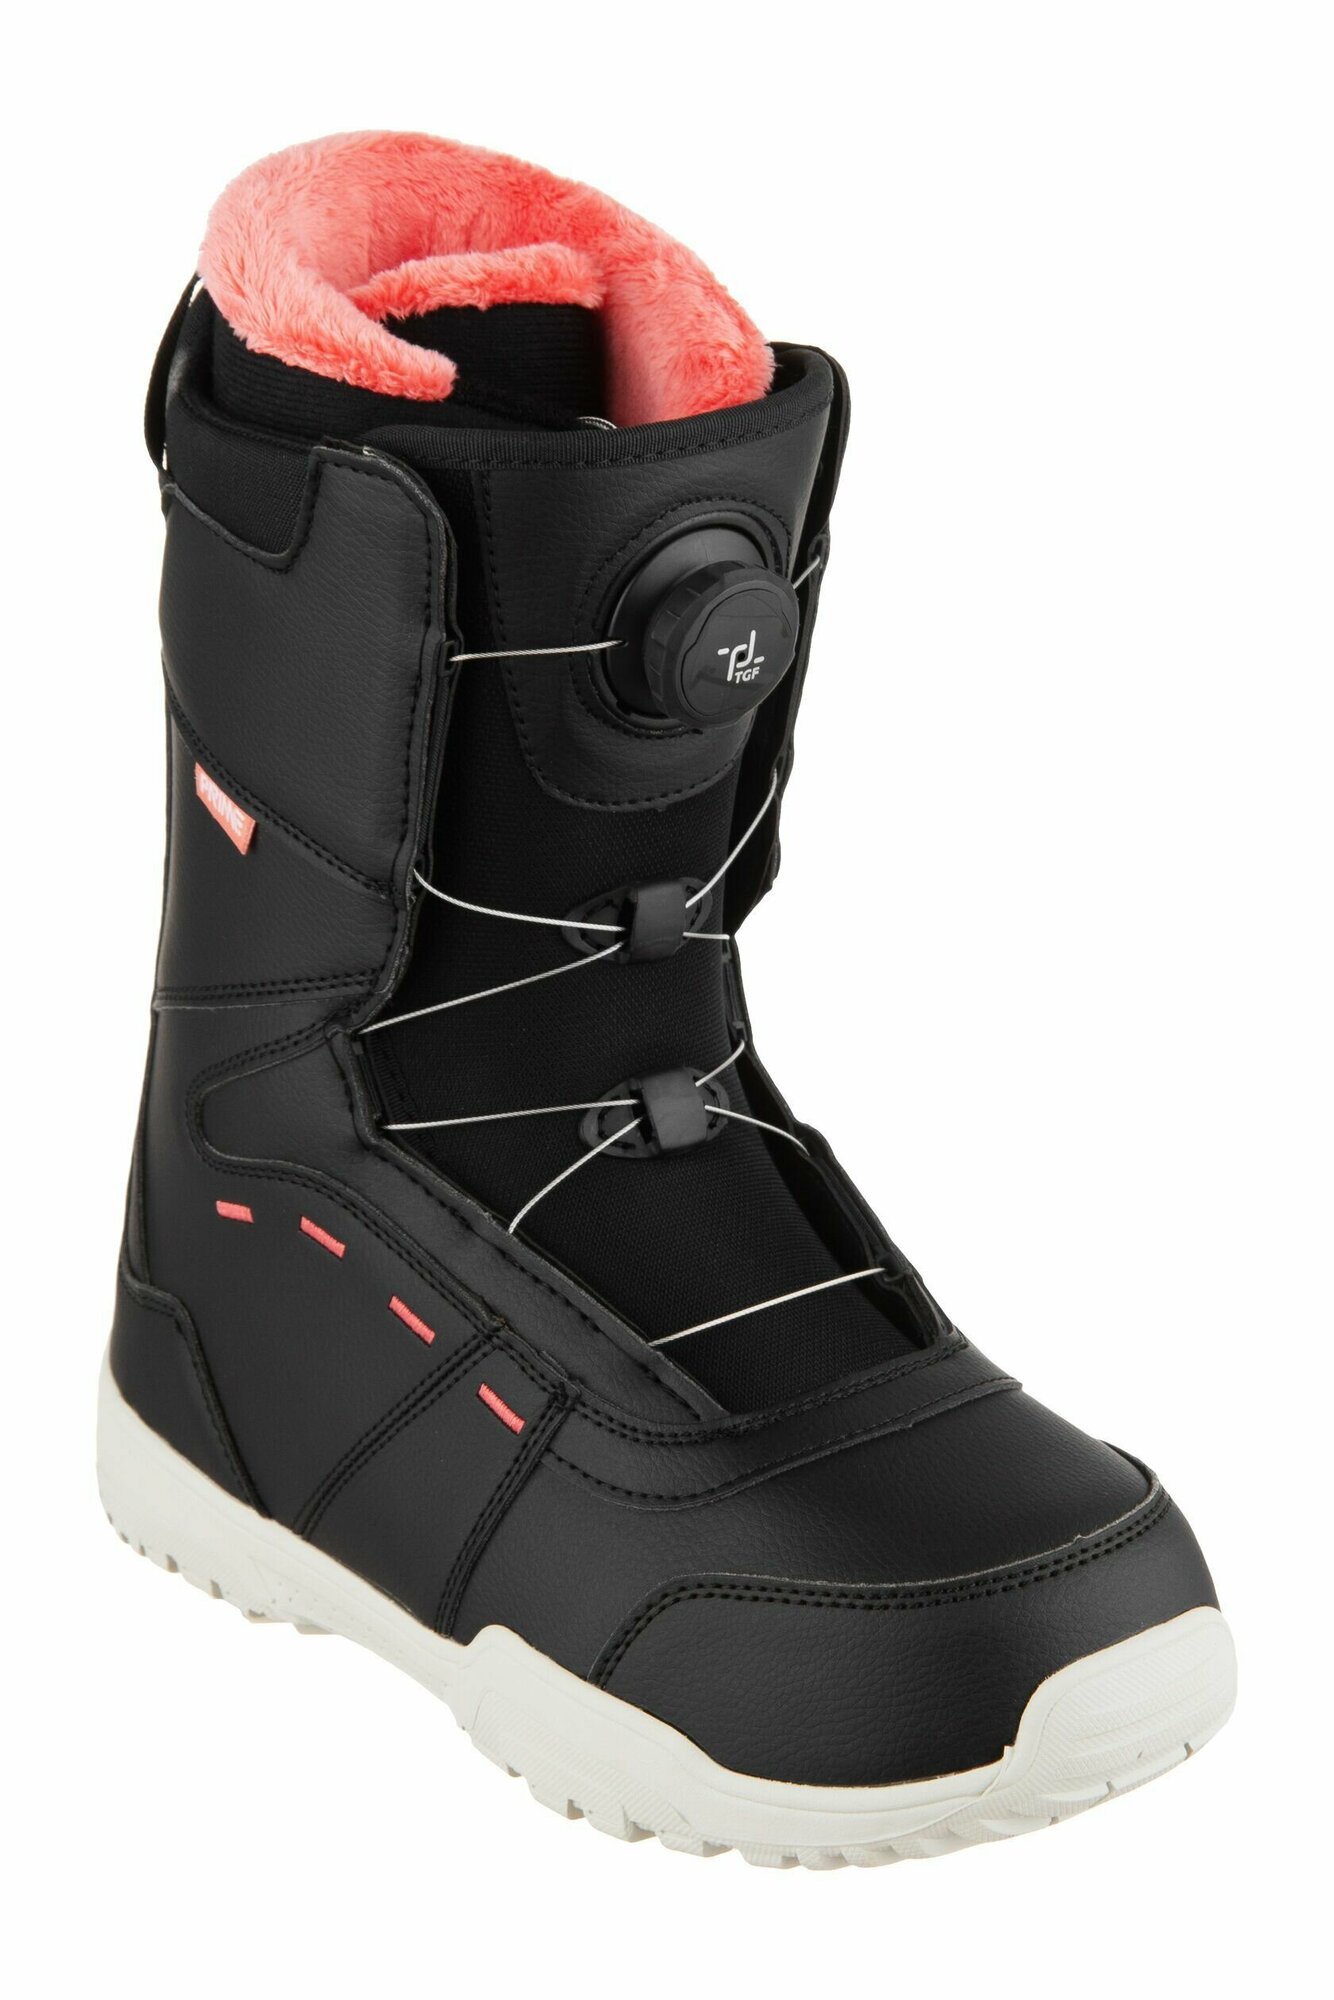 Ботинки сноубордические PRIME COOL-C1 TGF Black-Red (быстрая шнуровка) (38 RU / 25 cm)